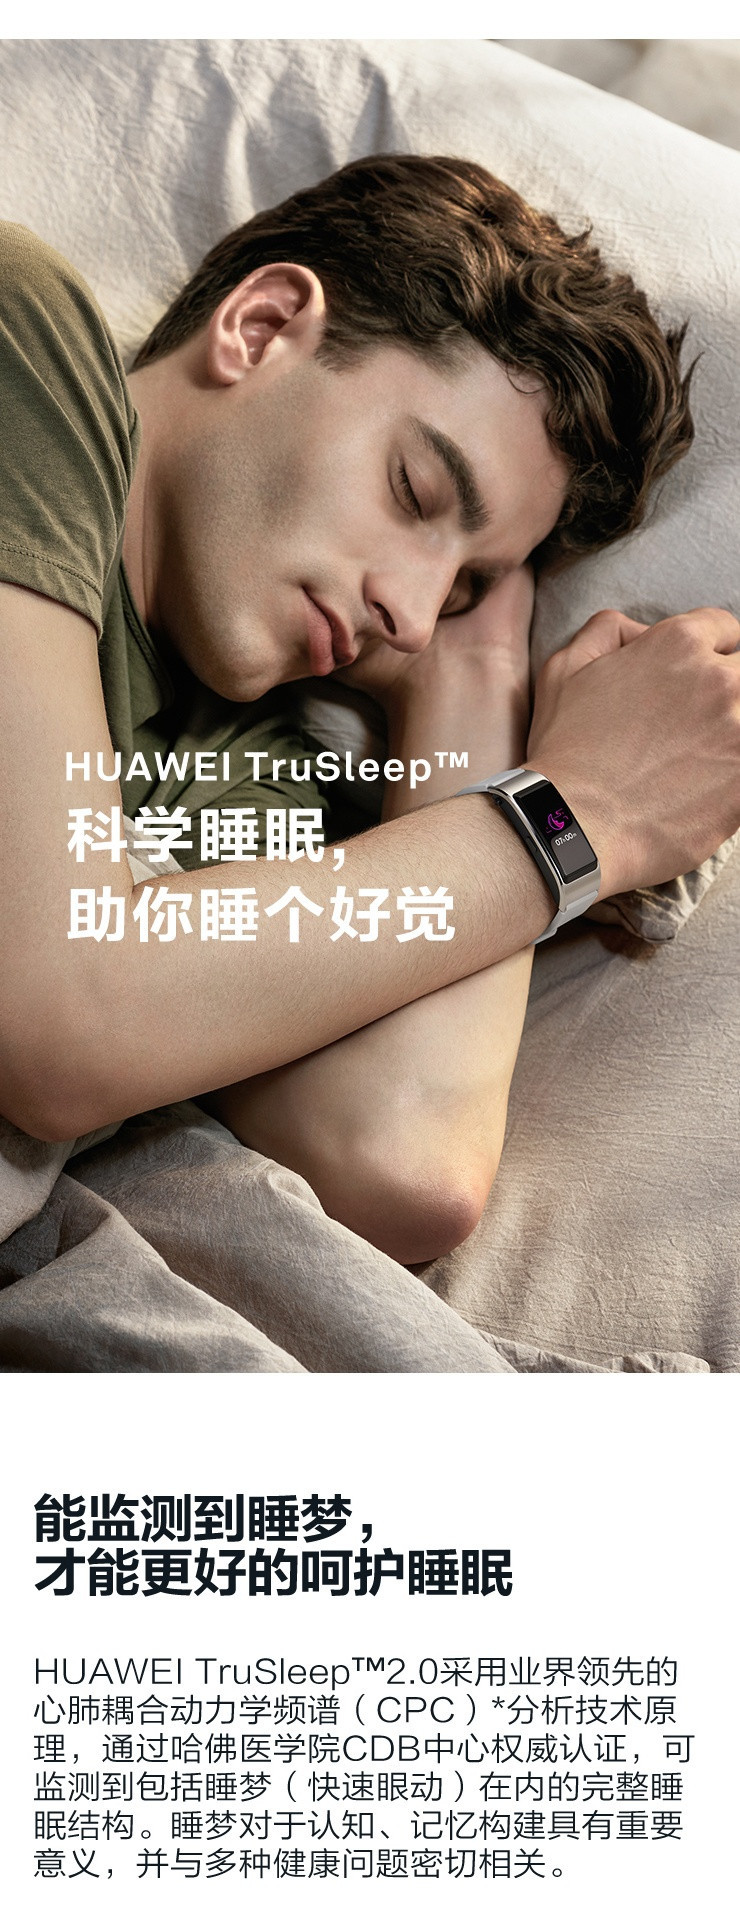 华为/HUAWEI 华为手环 B5 蓝牙耳机+智能手环+心率监测+彩屏+触控+压力监测+运动手环